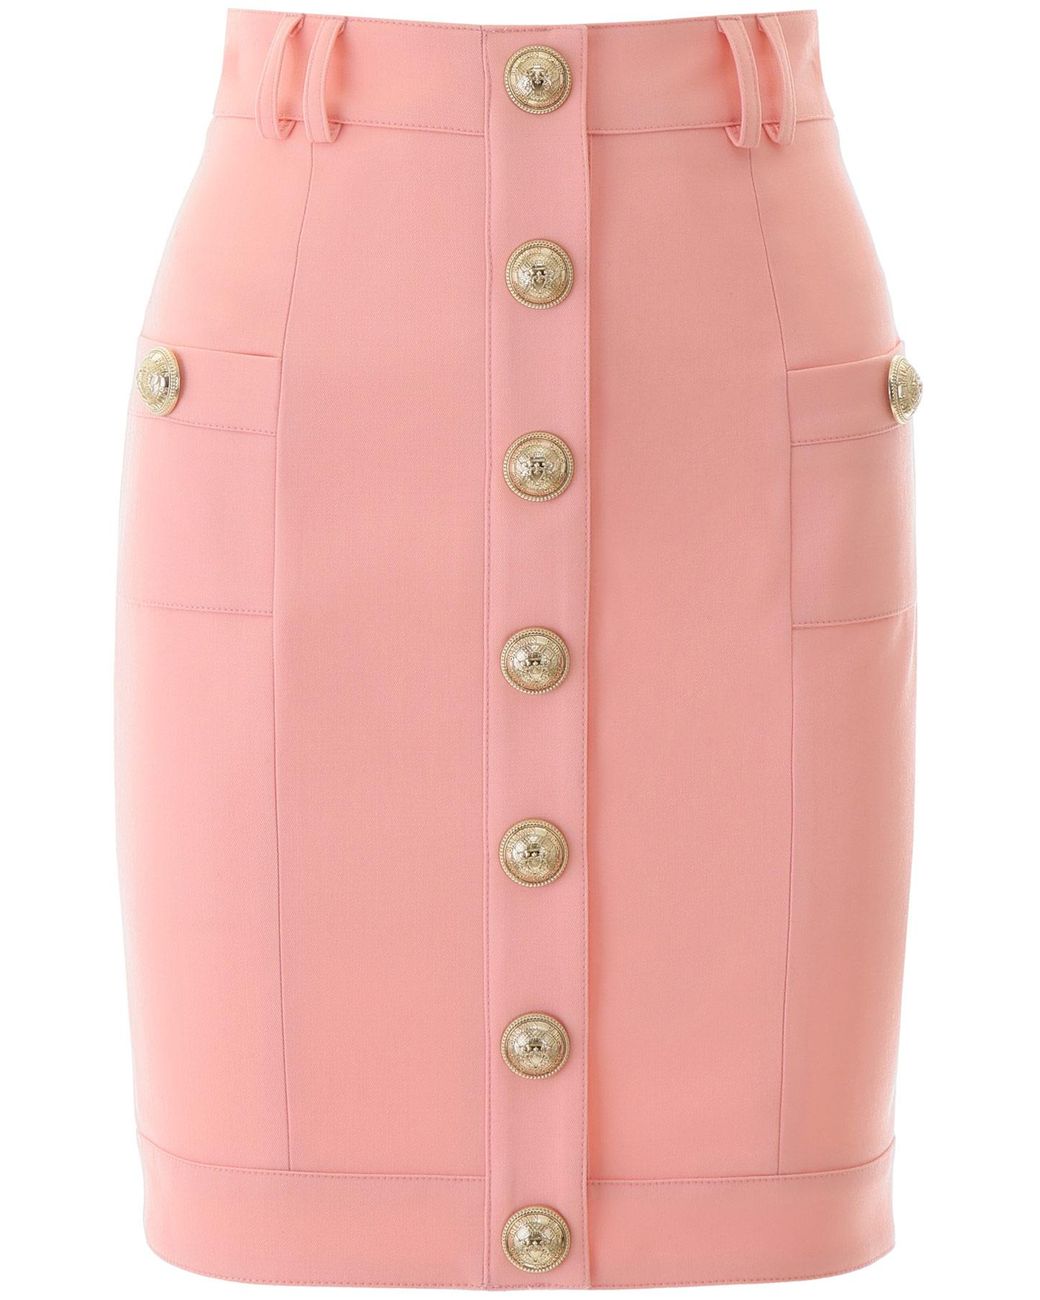 Balmain Wool Buttoned Skirt in Pink - Lyst